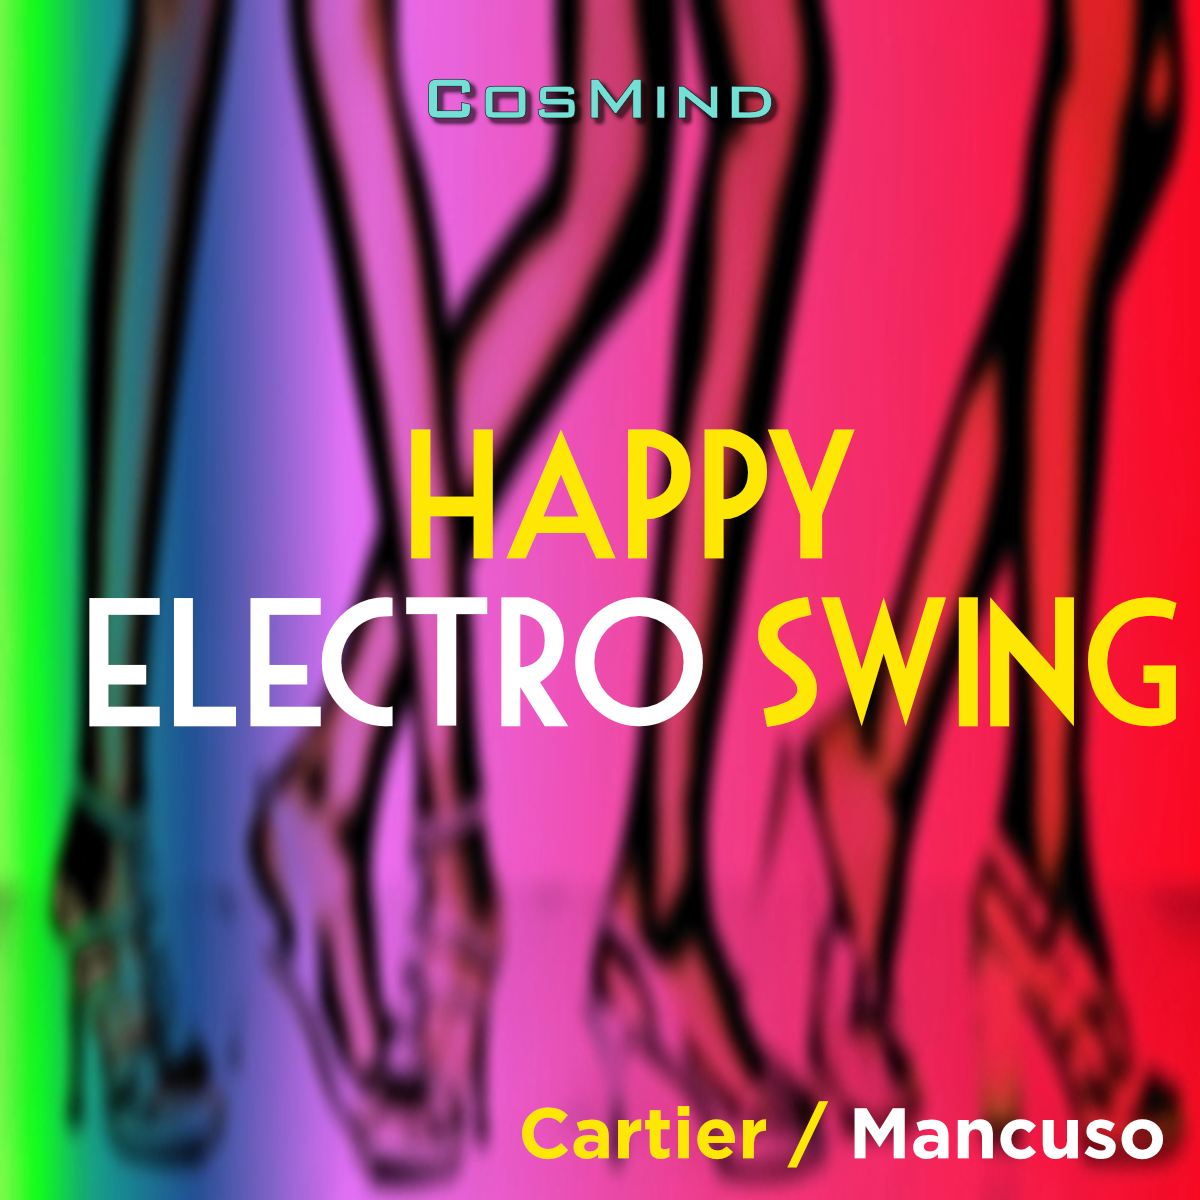 Happy Electro Swing